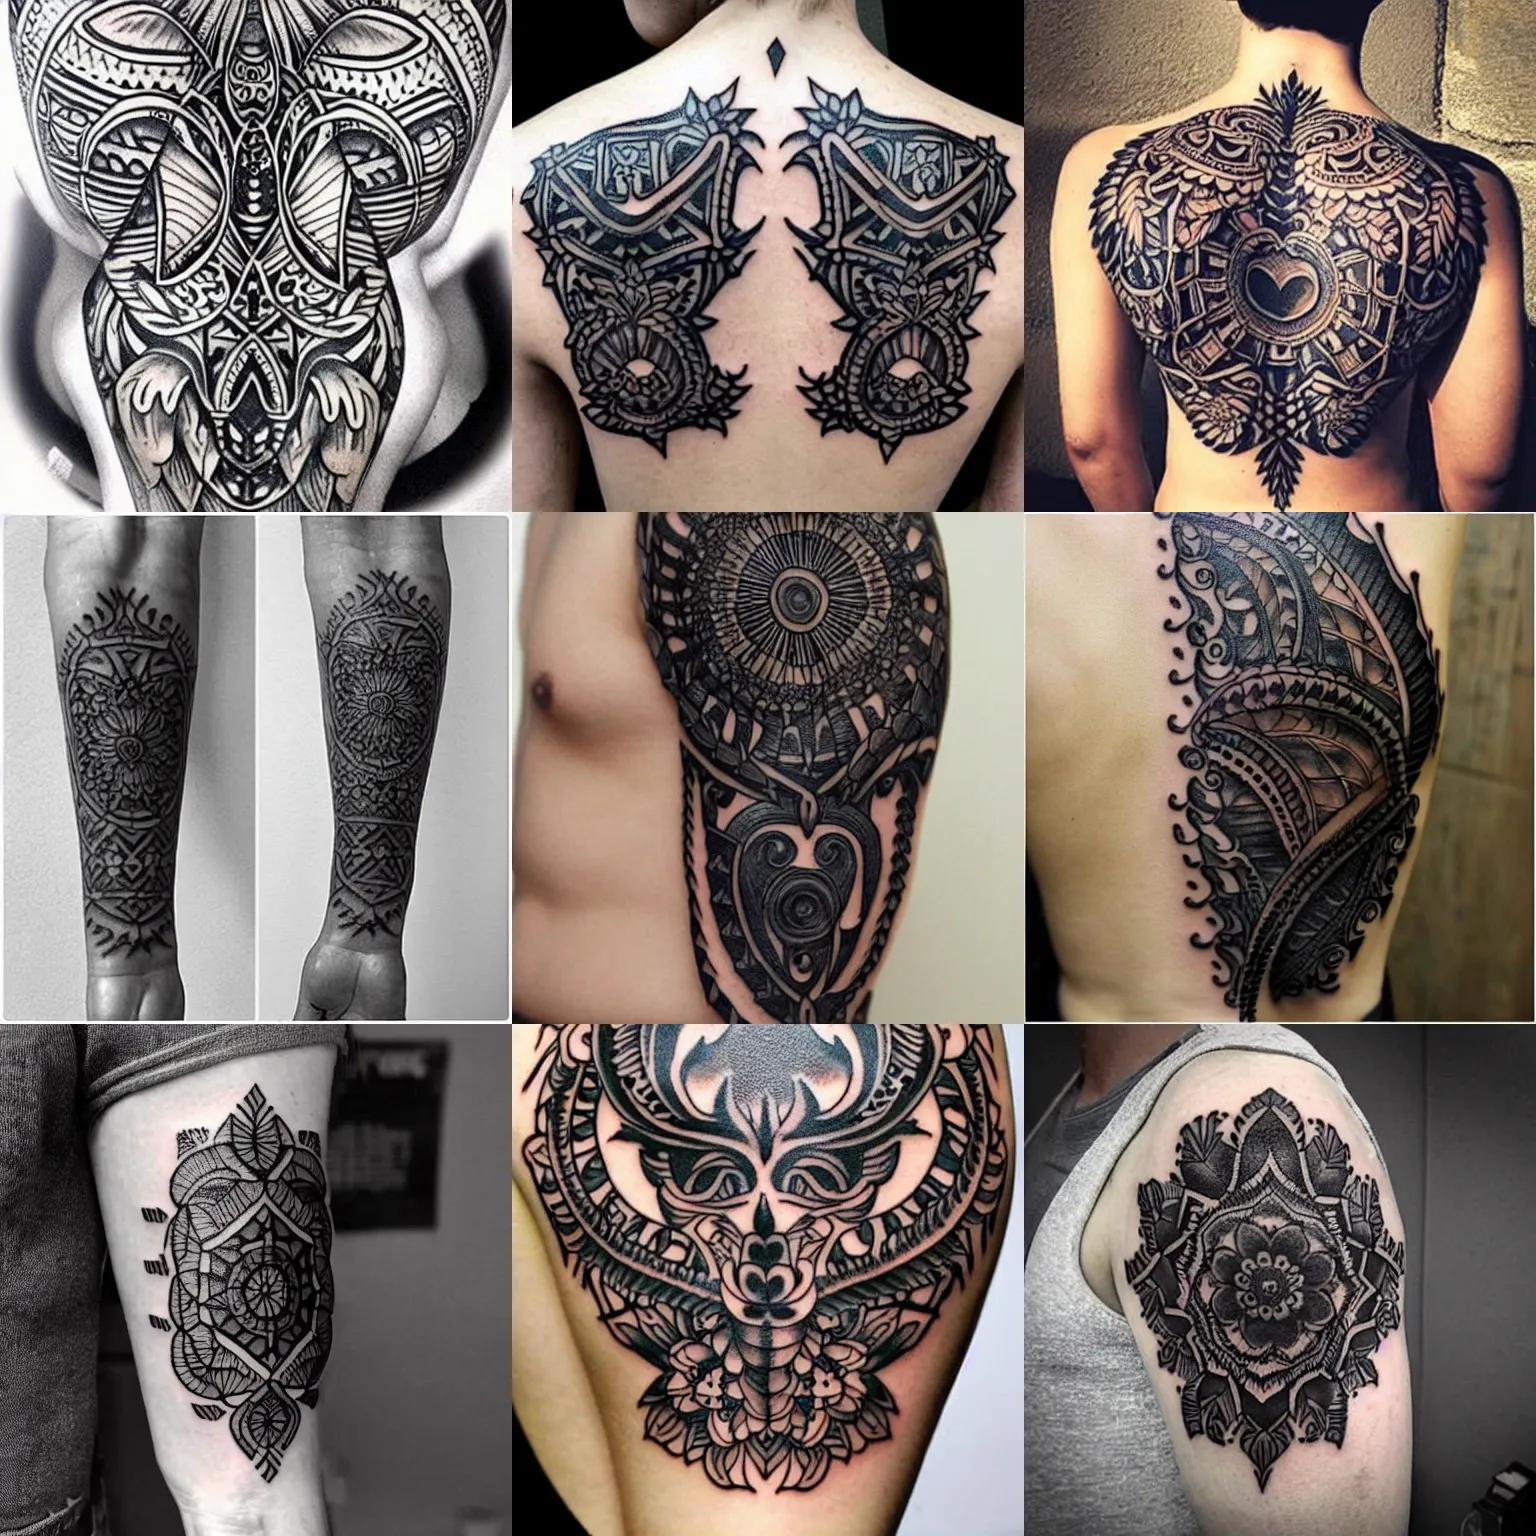 Prompt: intricate black tattoo